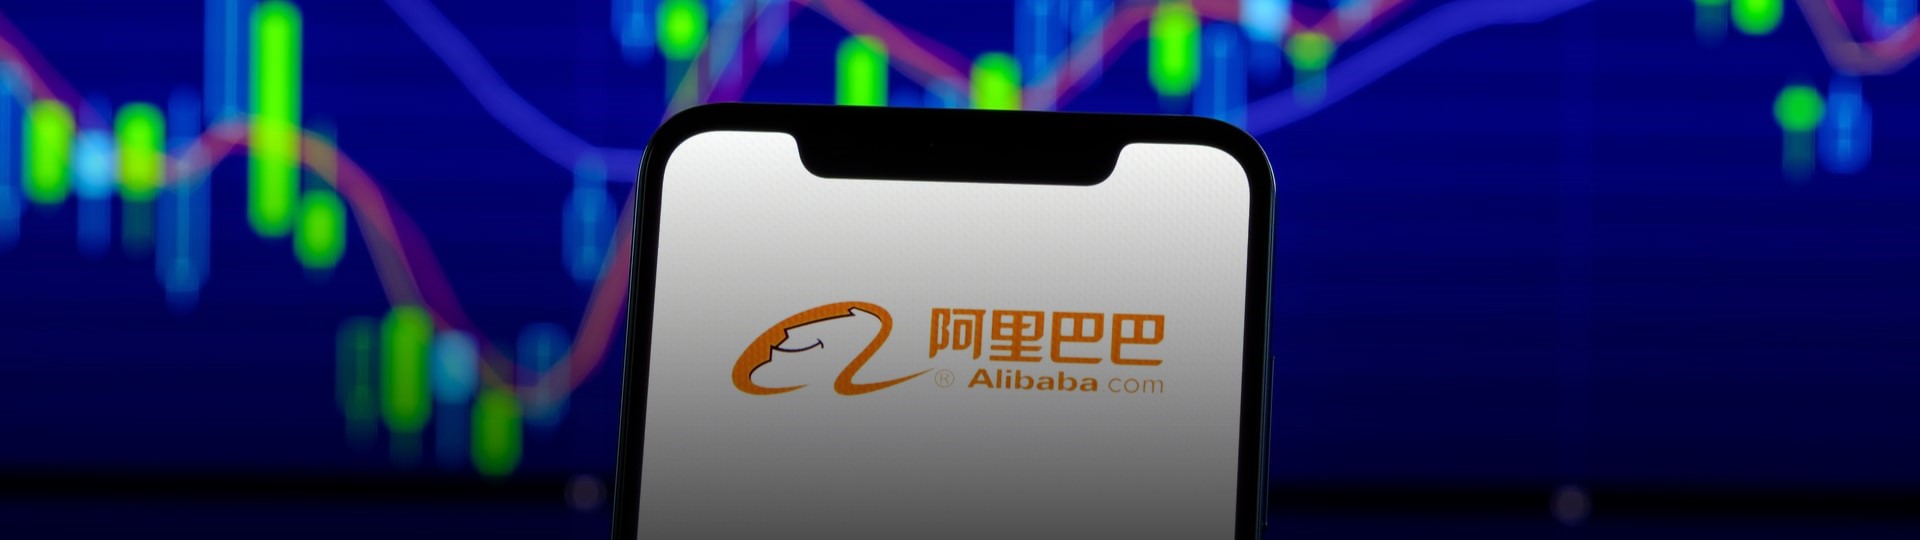 Alibaba překonala rekord z loňského roku